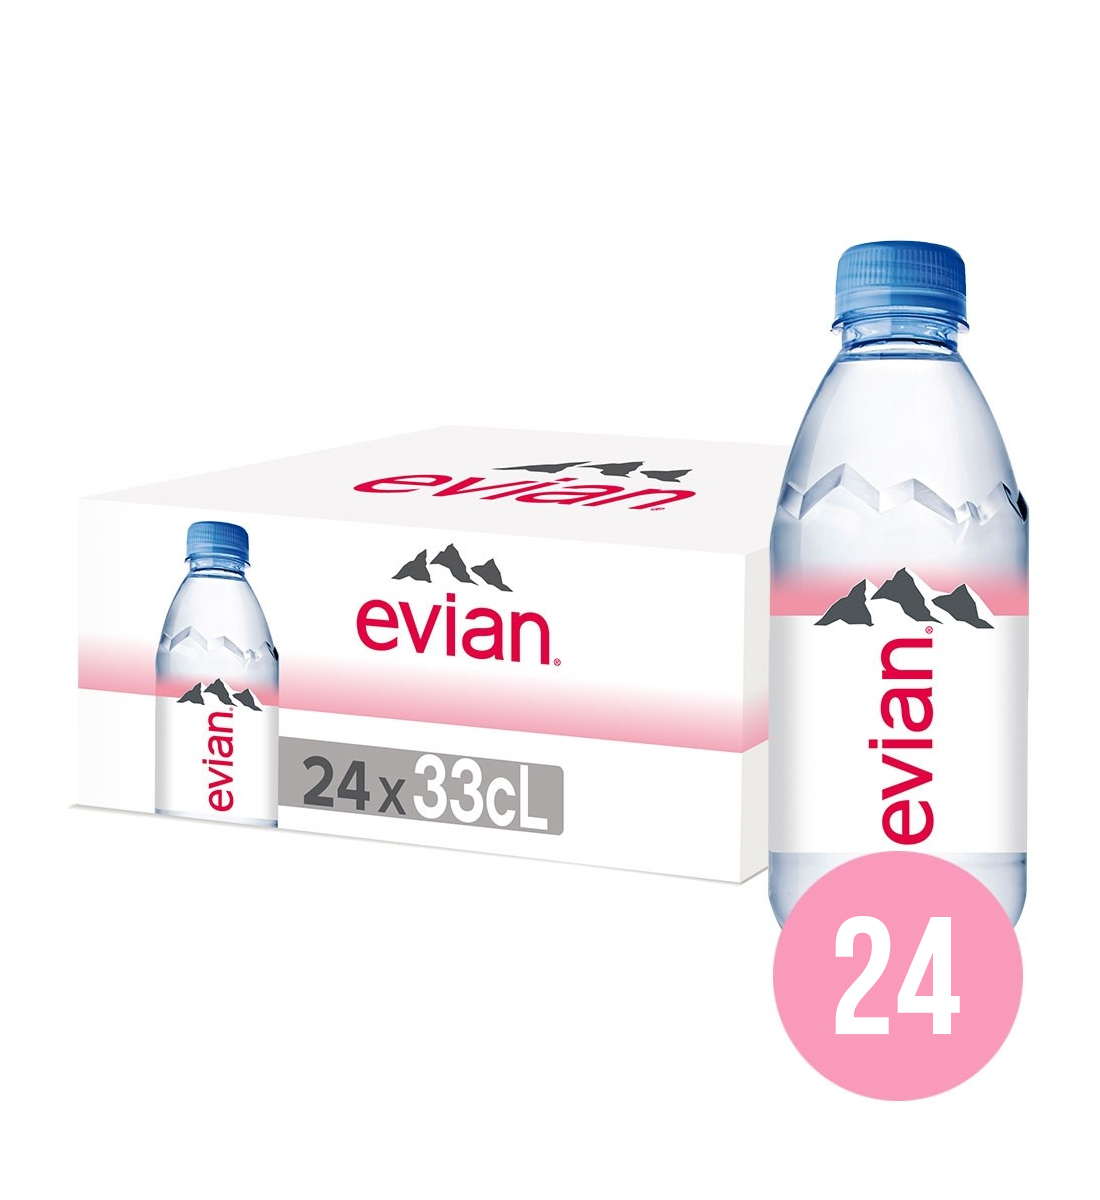 Evian apa minerala naturala plata BAX 24 fl. x 0.33L 0.33L